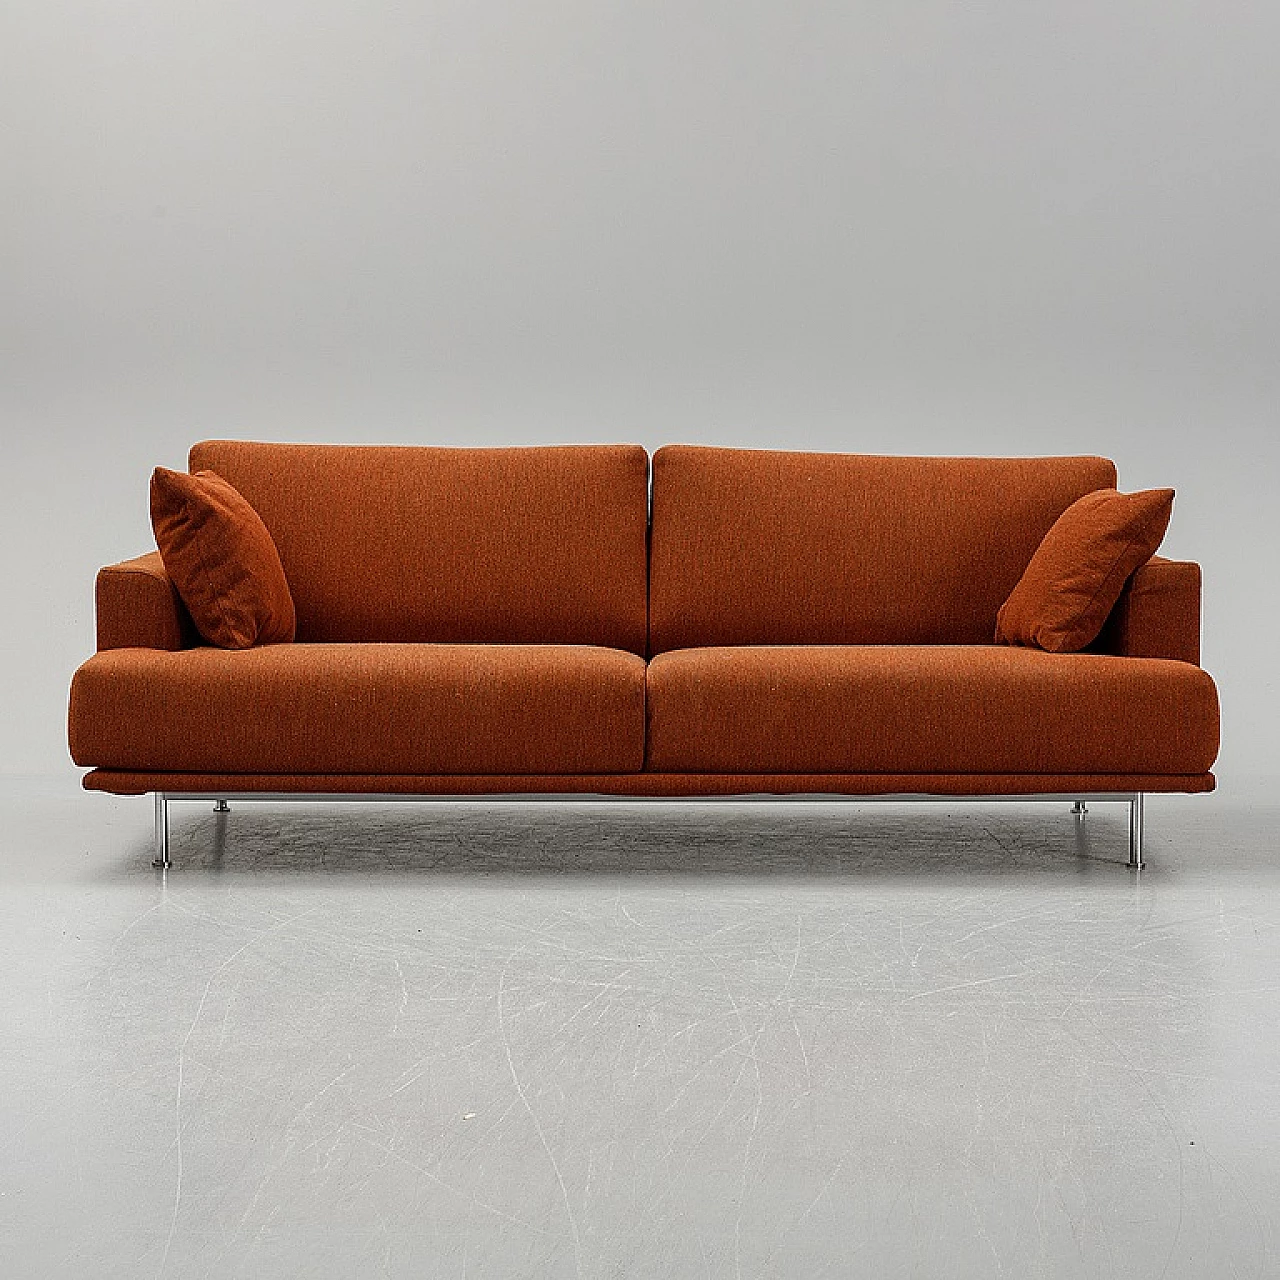 NEST 253 sofa in brick orange by Piero Lissoni for Cassina, 1999 2